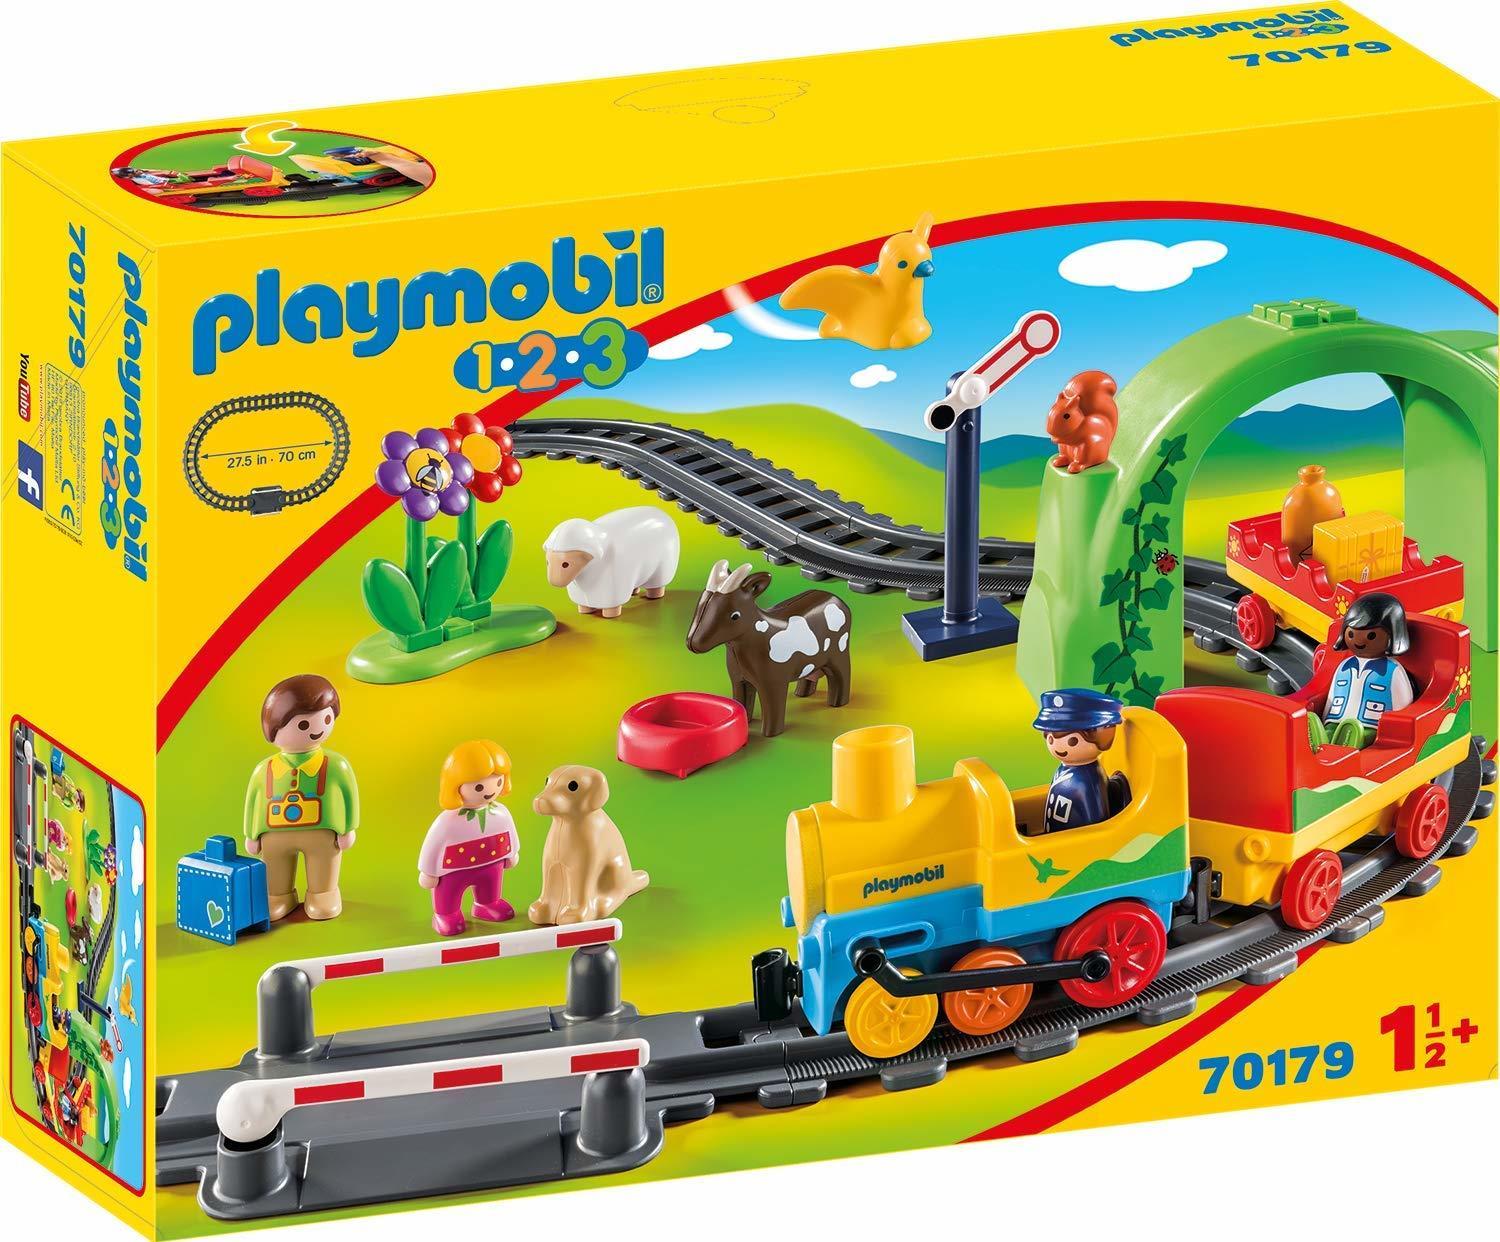 Playmobil 1.2.3 70179 (70179)